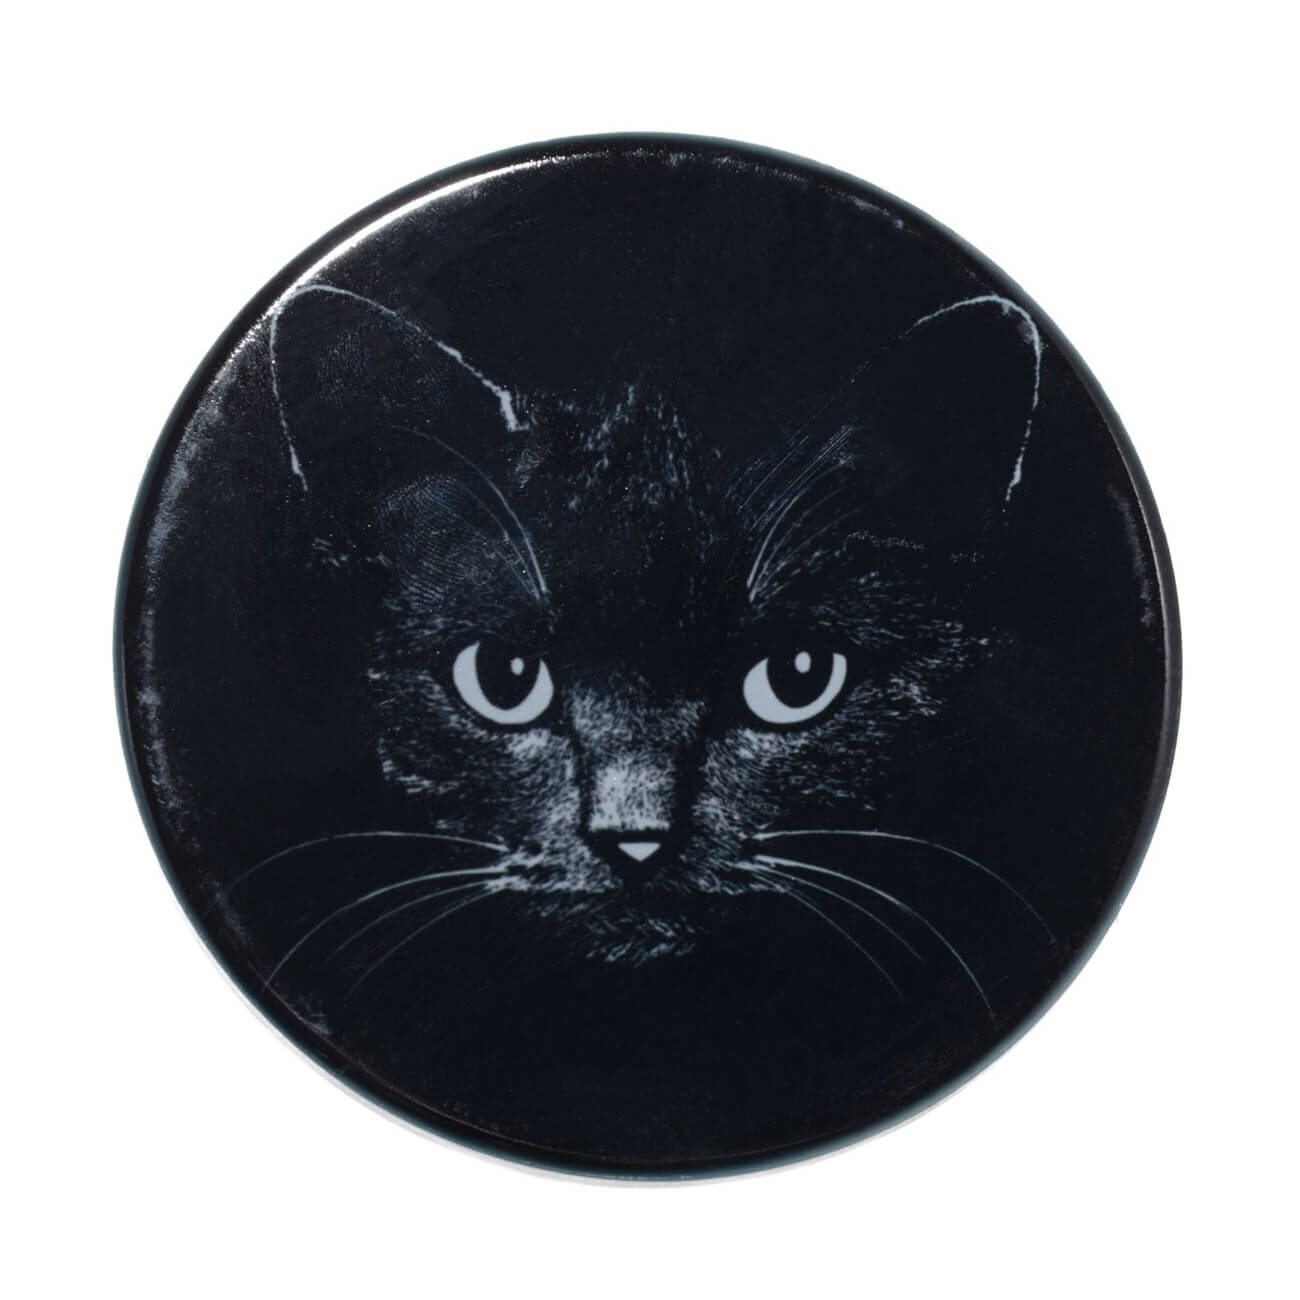 Подставка под кружку, 11x11 см, керамика/пробка, круглая, черная, Ночной кот, Cat night подставка под горячее night 10×10 см